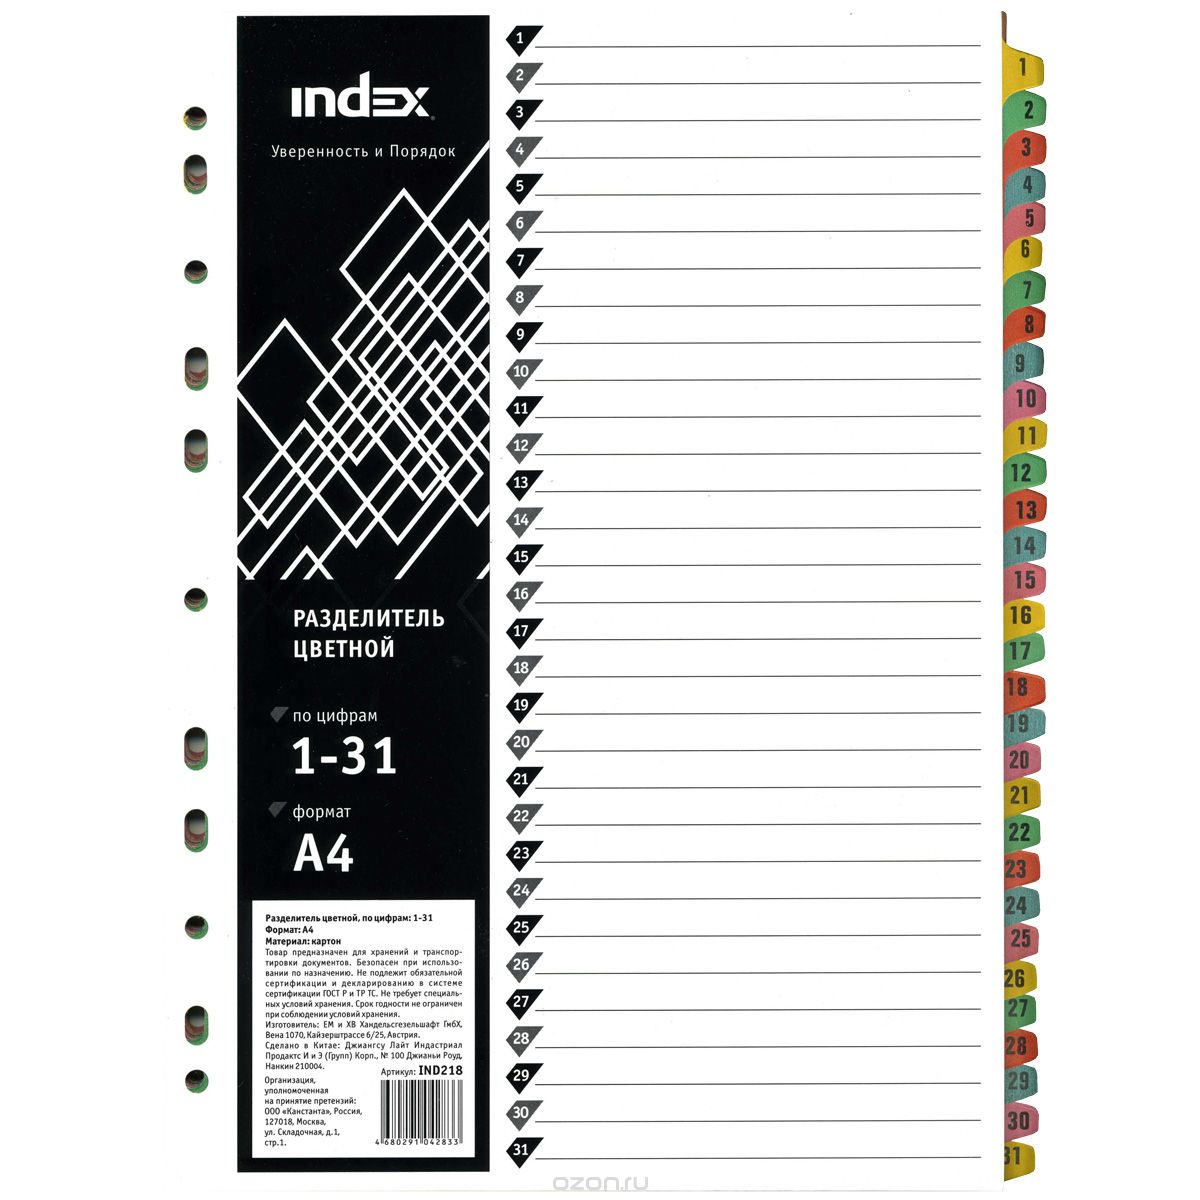 Index    1-31 4